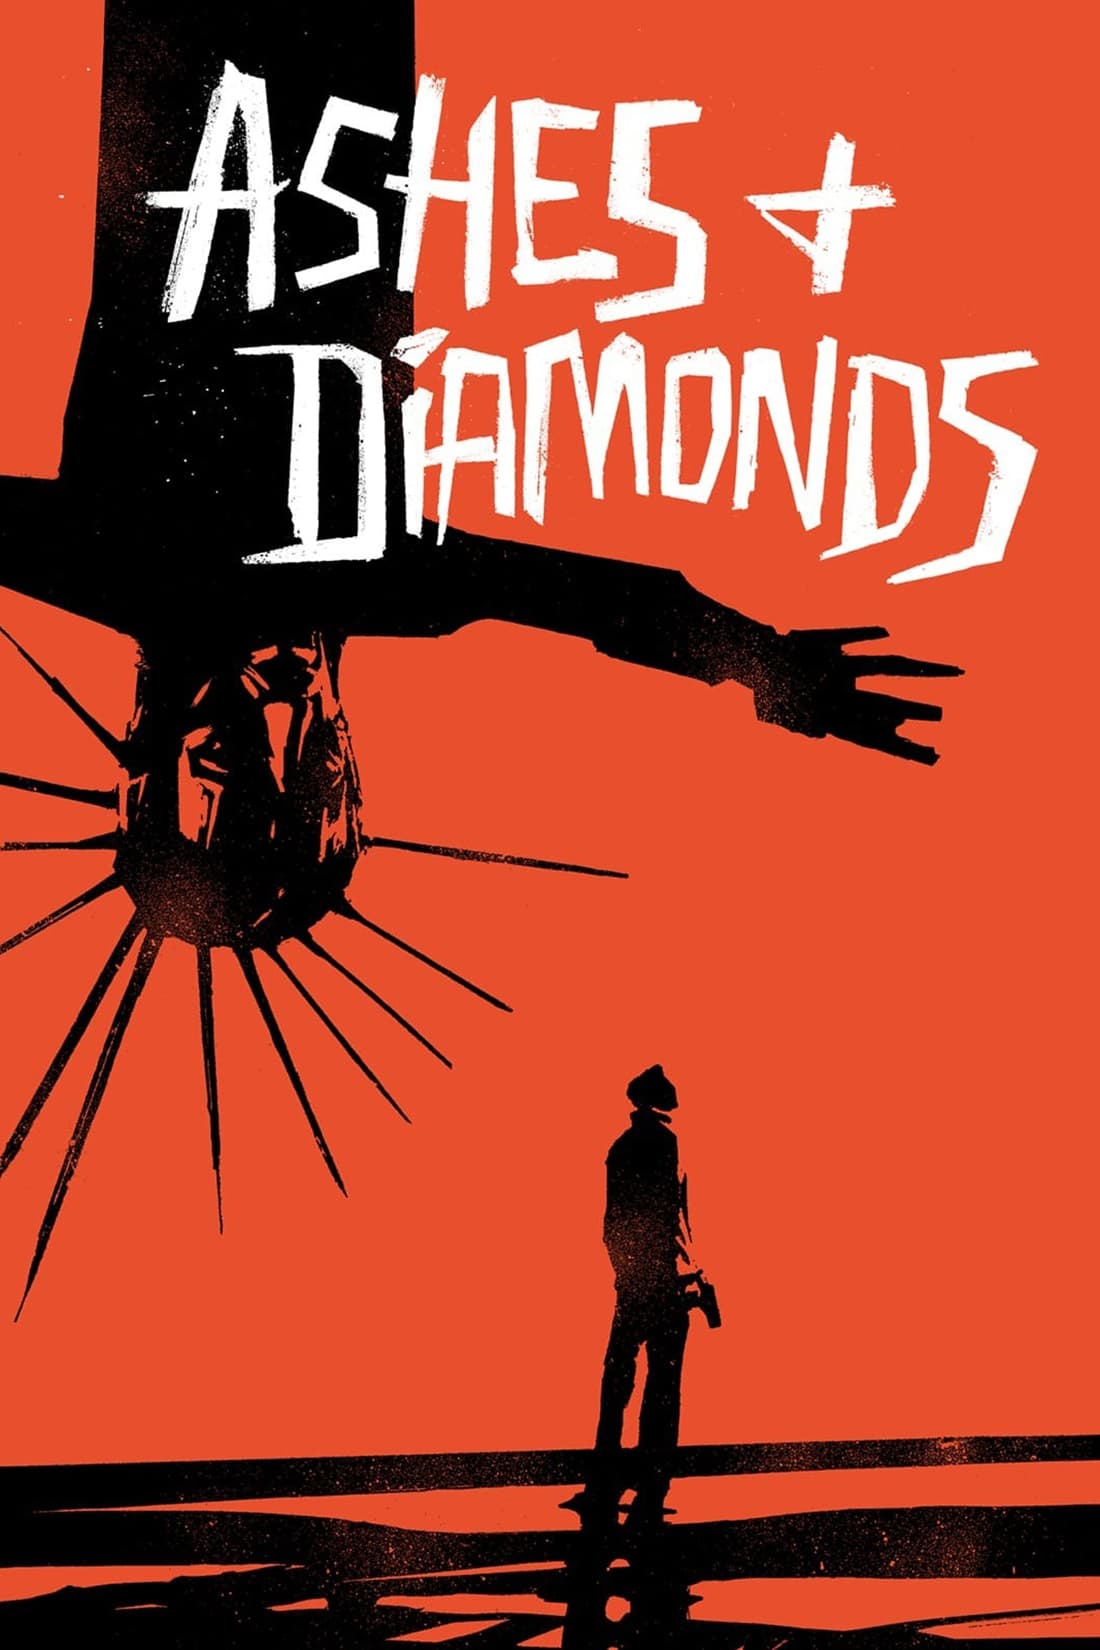 Cendres et diamants (1958)